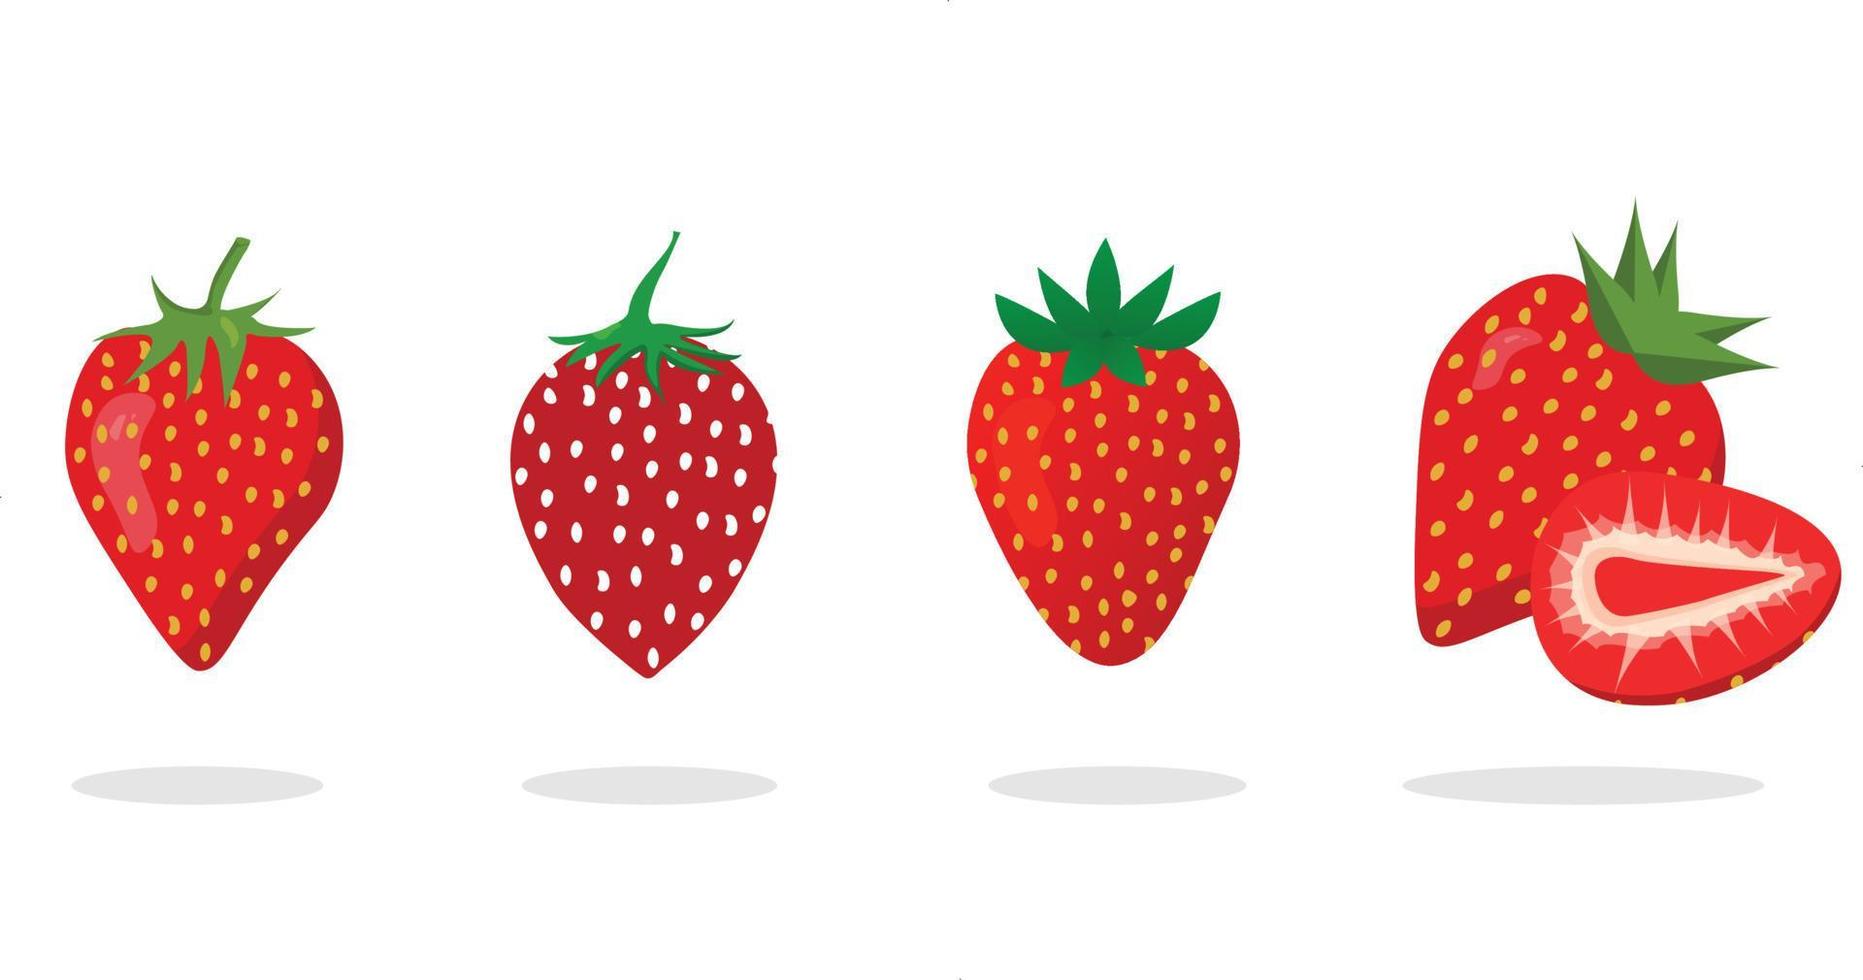 colección de fresas, frutos rojos de fresa, fondos de fresa, tarjetas de amor de fresa ilustración vectorial. vector